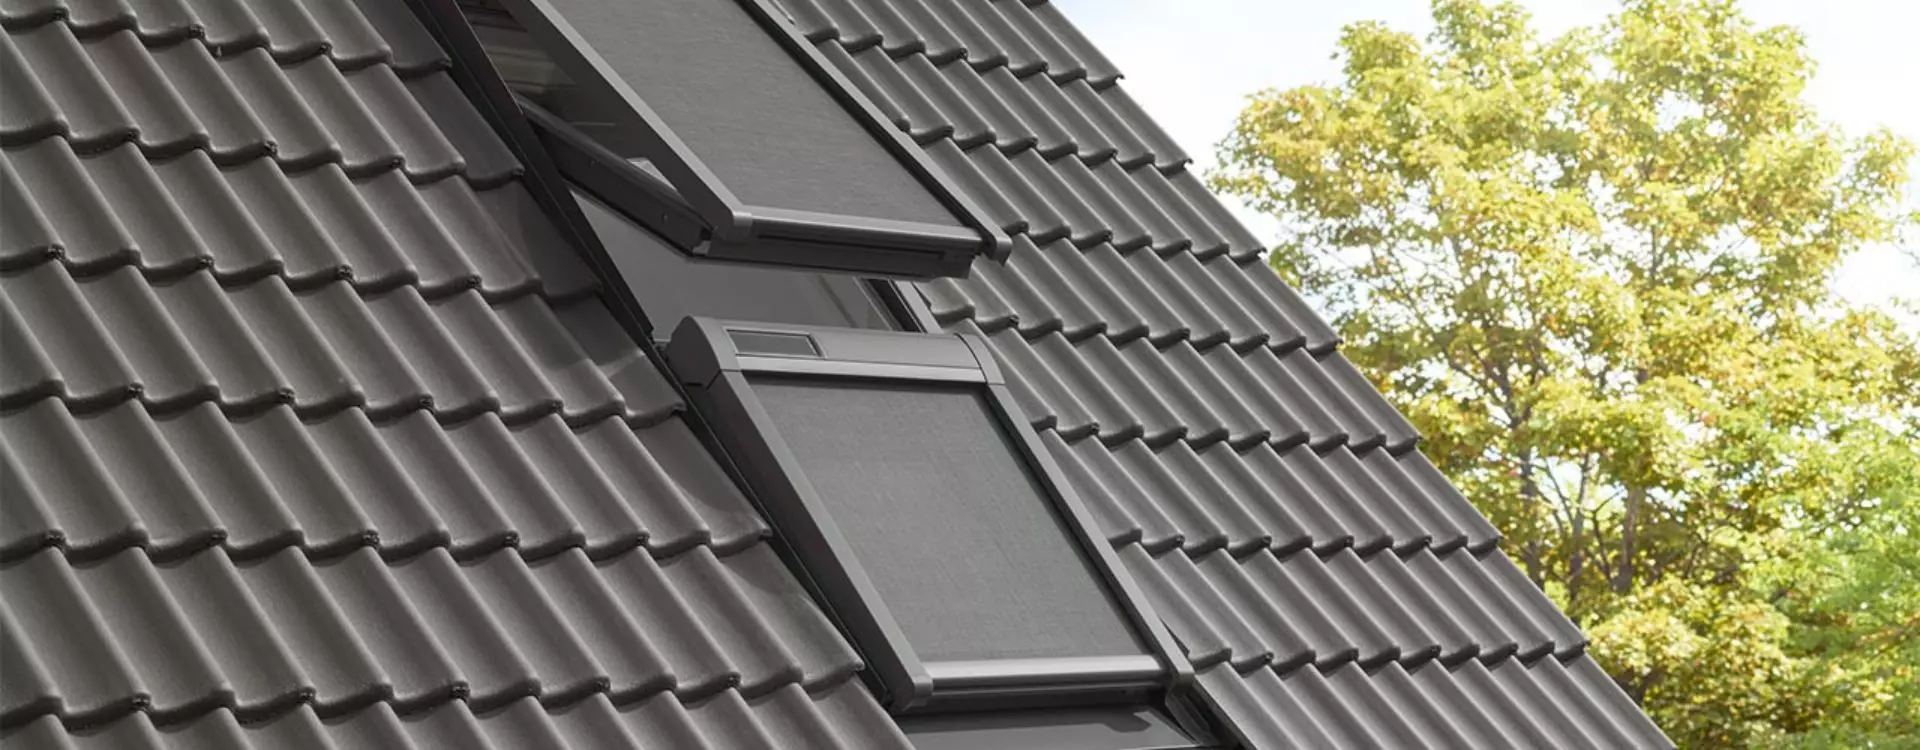 Finestre per tetti Velux Torino - Icos per la Casa